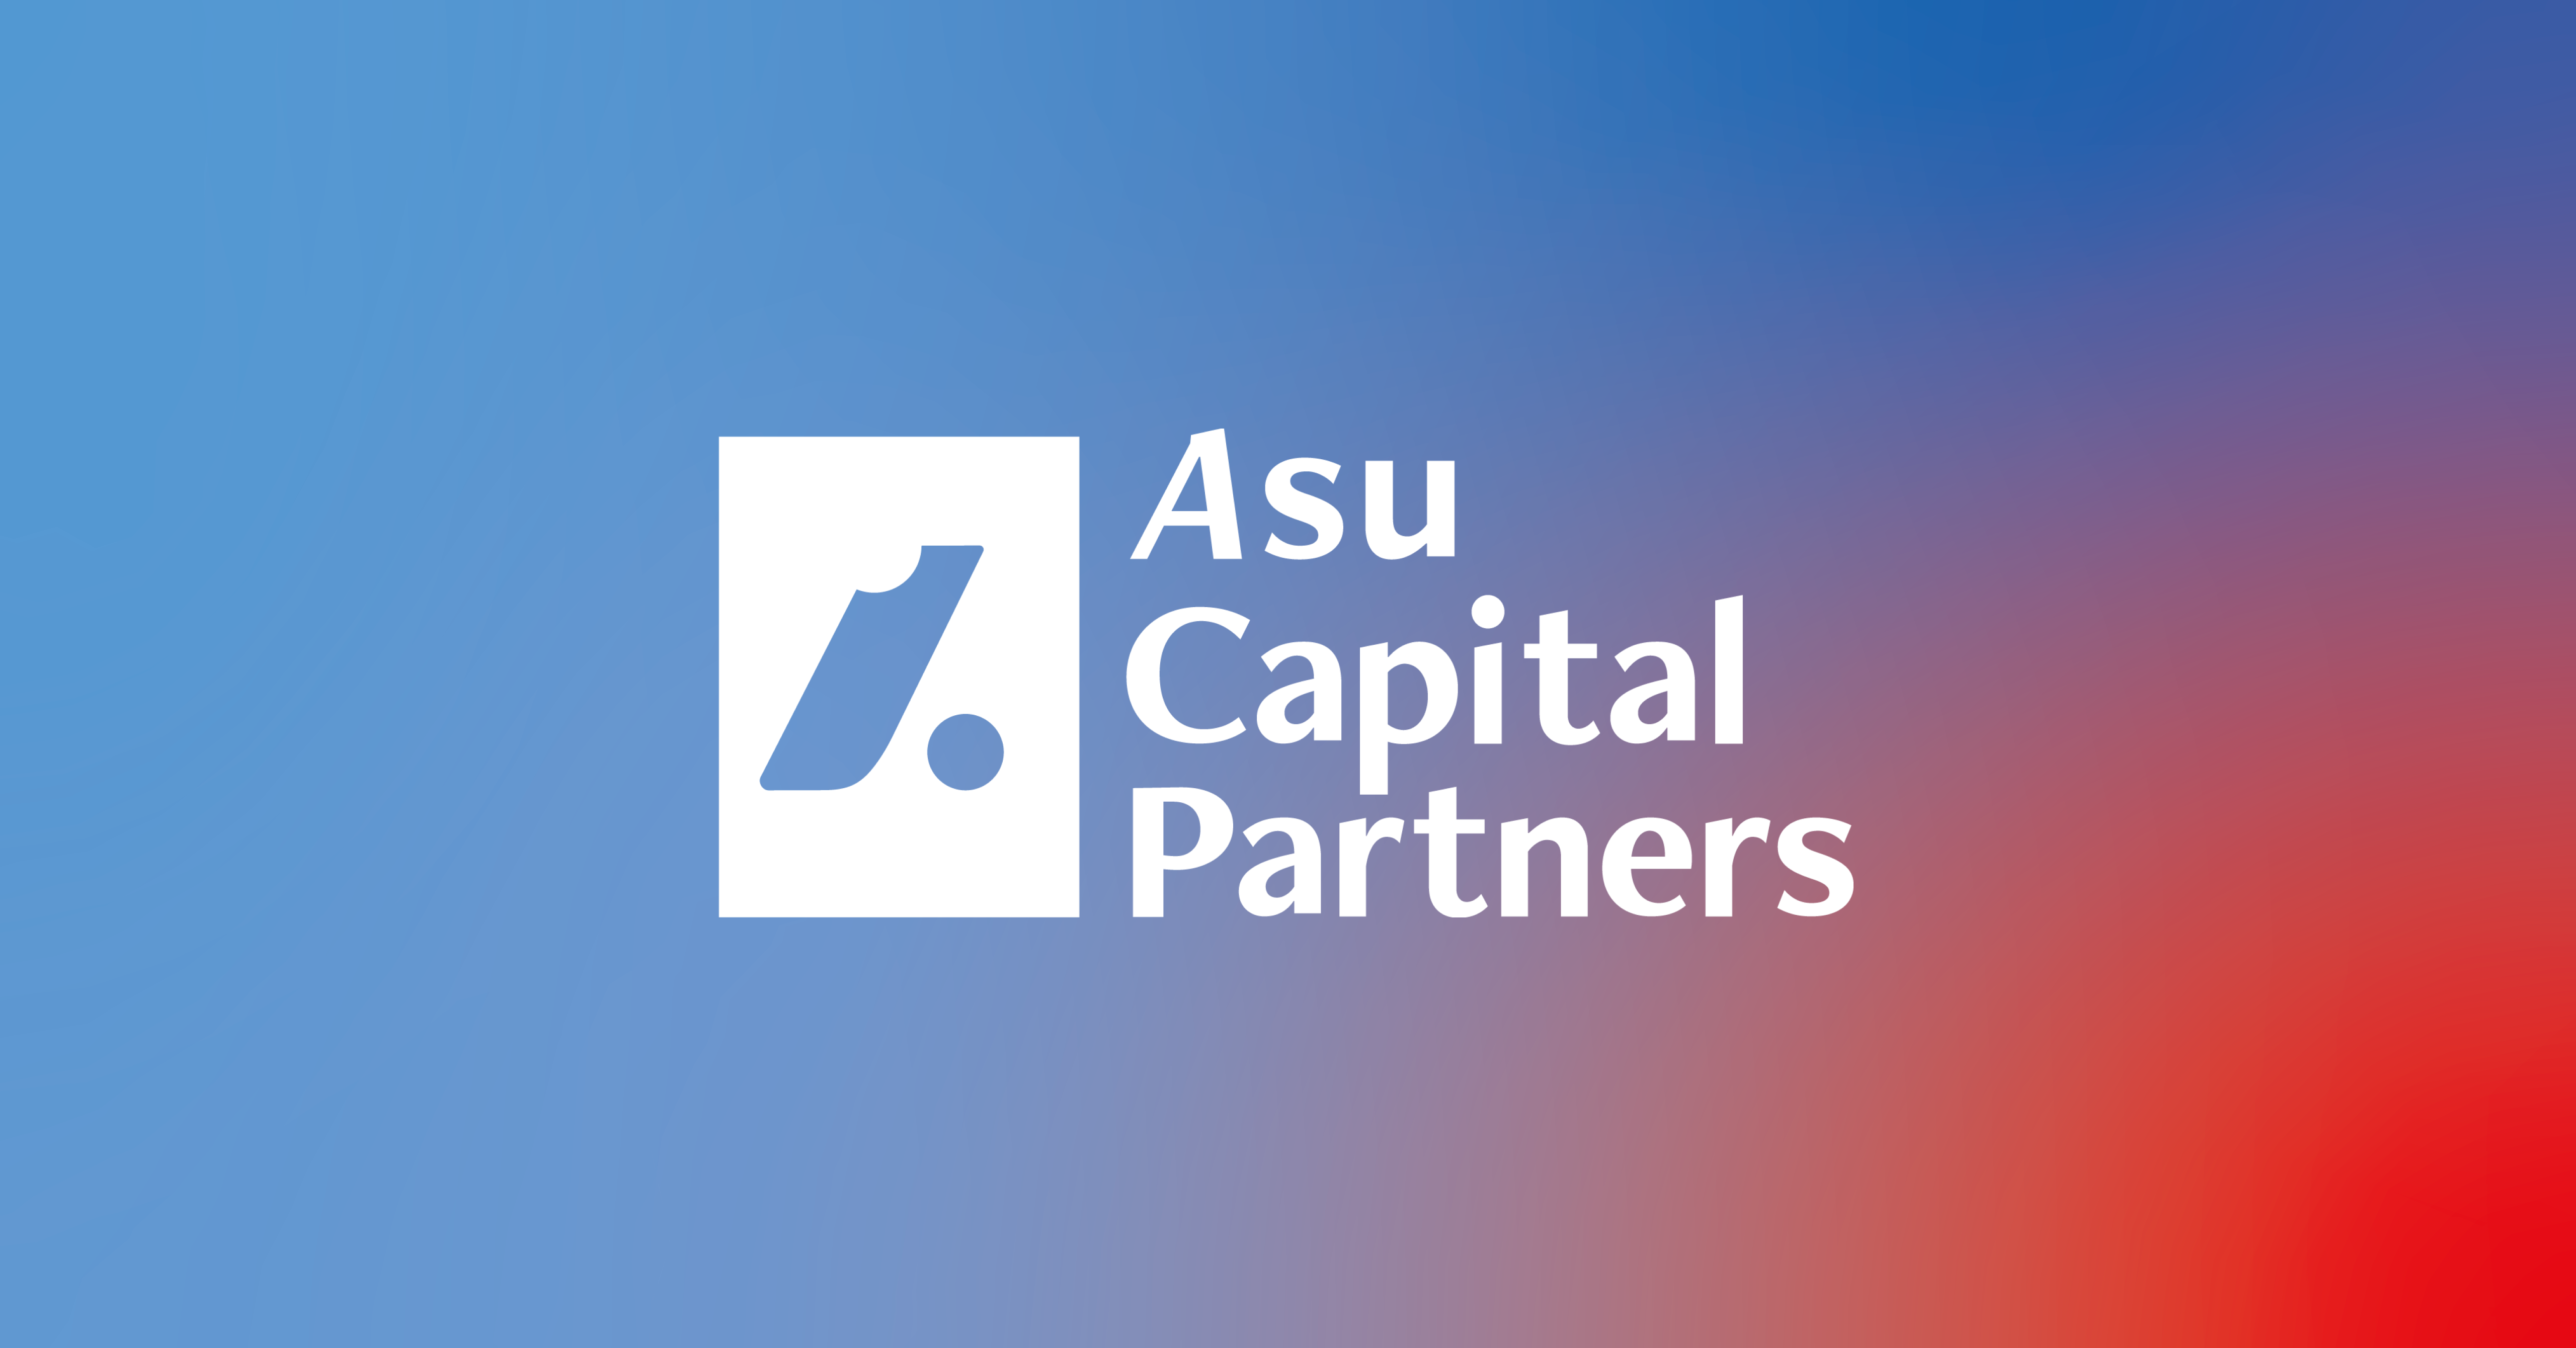 【投資先プレスリリース】日本発のグローバルスタートアップ支援へ - 「Asu Capital Partners」、シード期に特化した新ファンドを設立し投資を開始